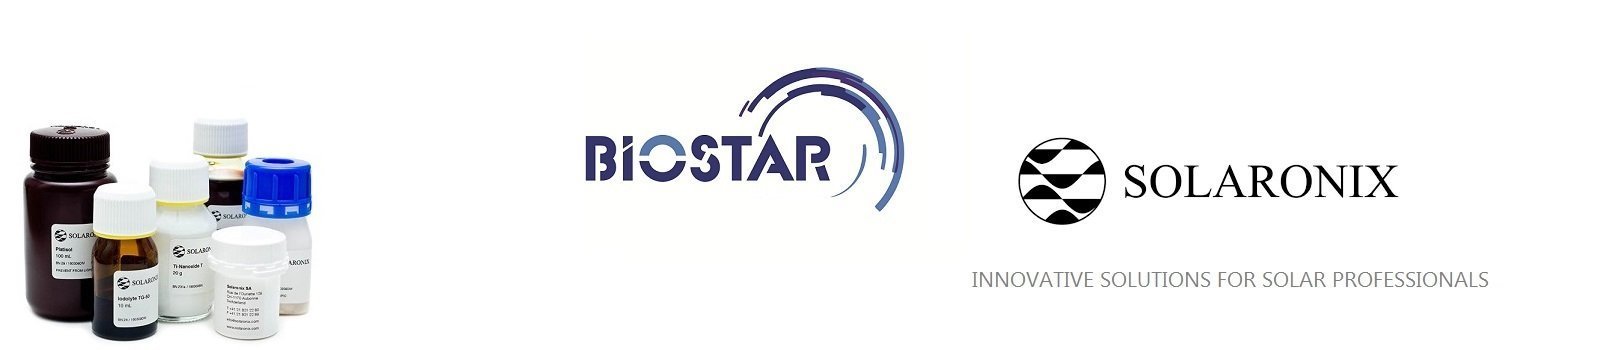 Solaronix ürünleri Biostar'da.